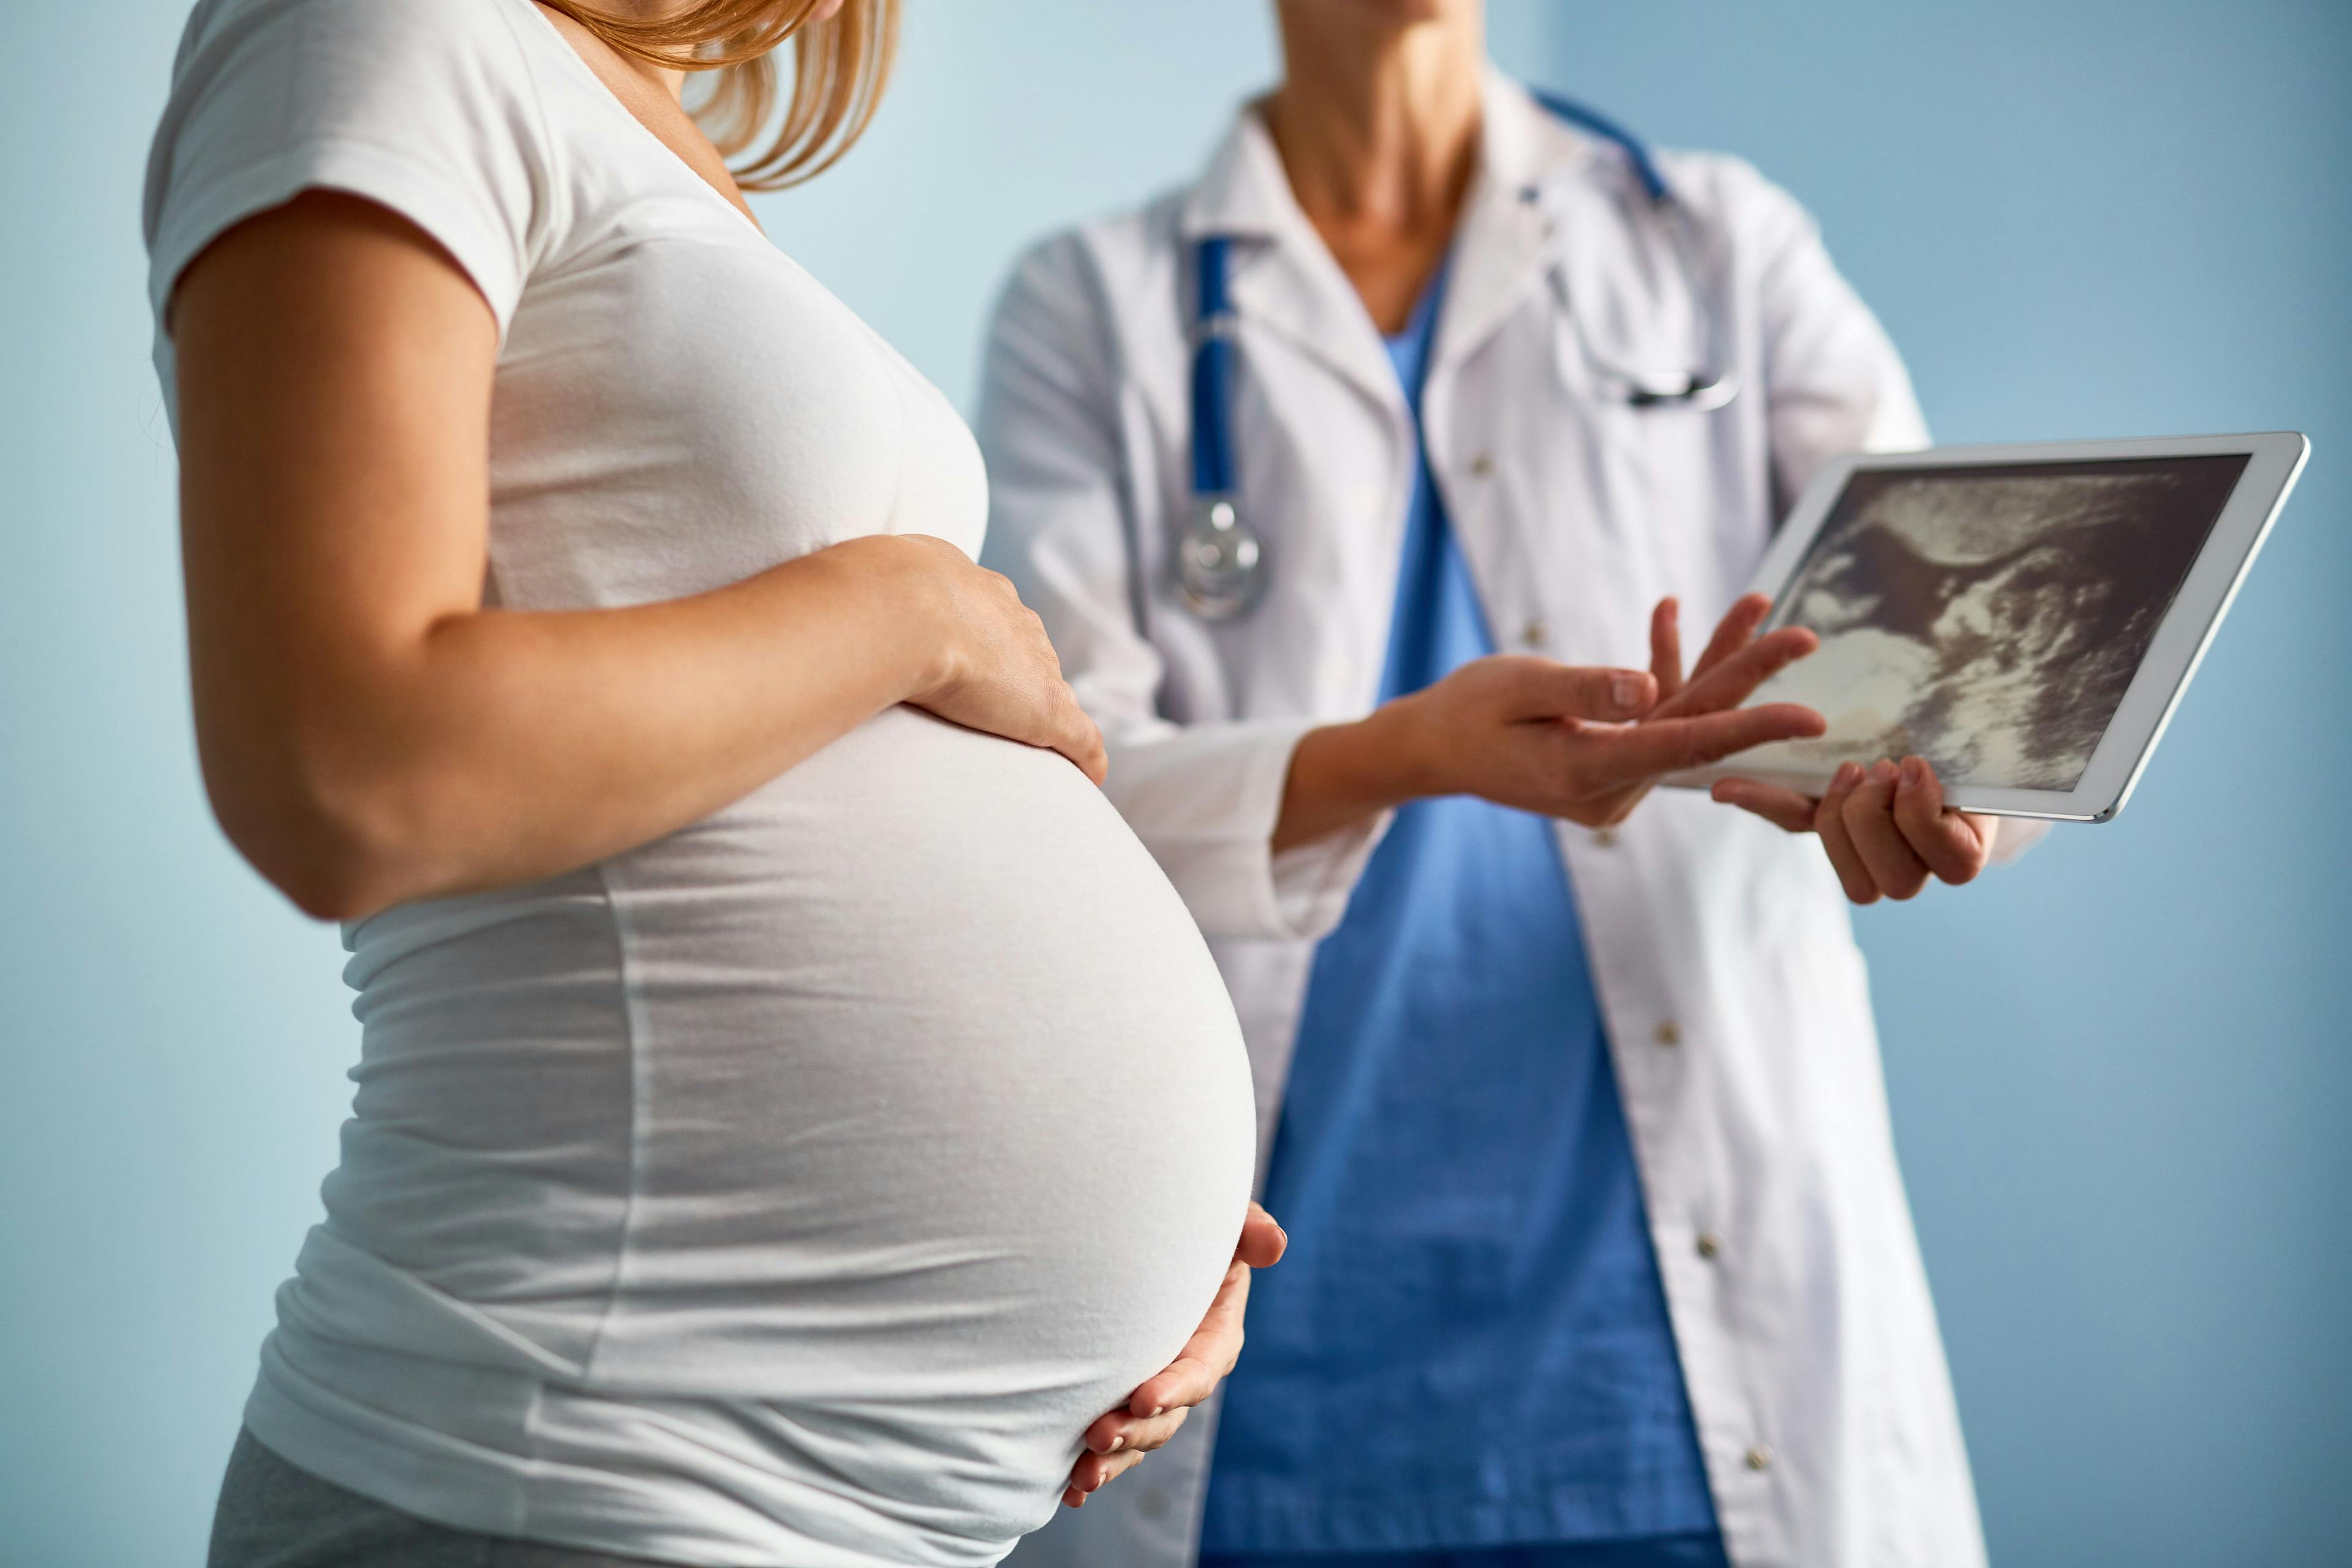 Prenatal Exposure to Inorganic Arsenic, Cadmium Associated with Atopic Dermatitis Risk